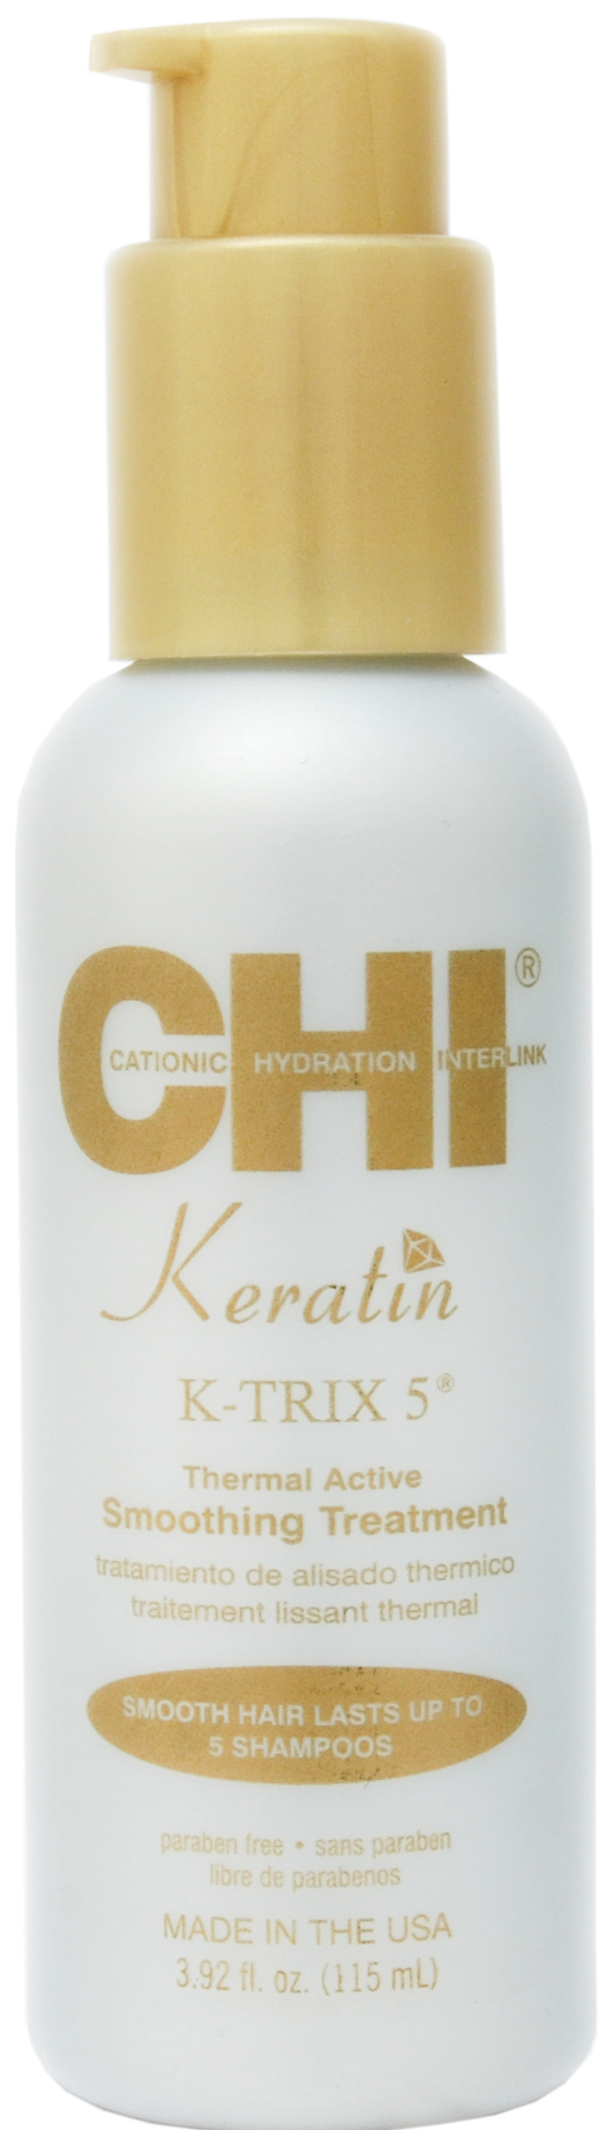 Эмульсия для волос CHI Keratin K-TRIX 5 Thermal Active Smoothing разглаживающая, 115 мл бензилбензоат эмульсия для наружного применения 20 % флакон 200 г